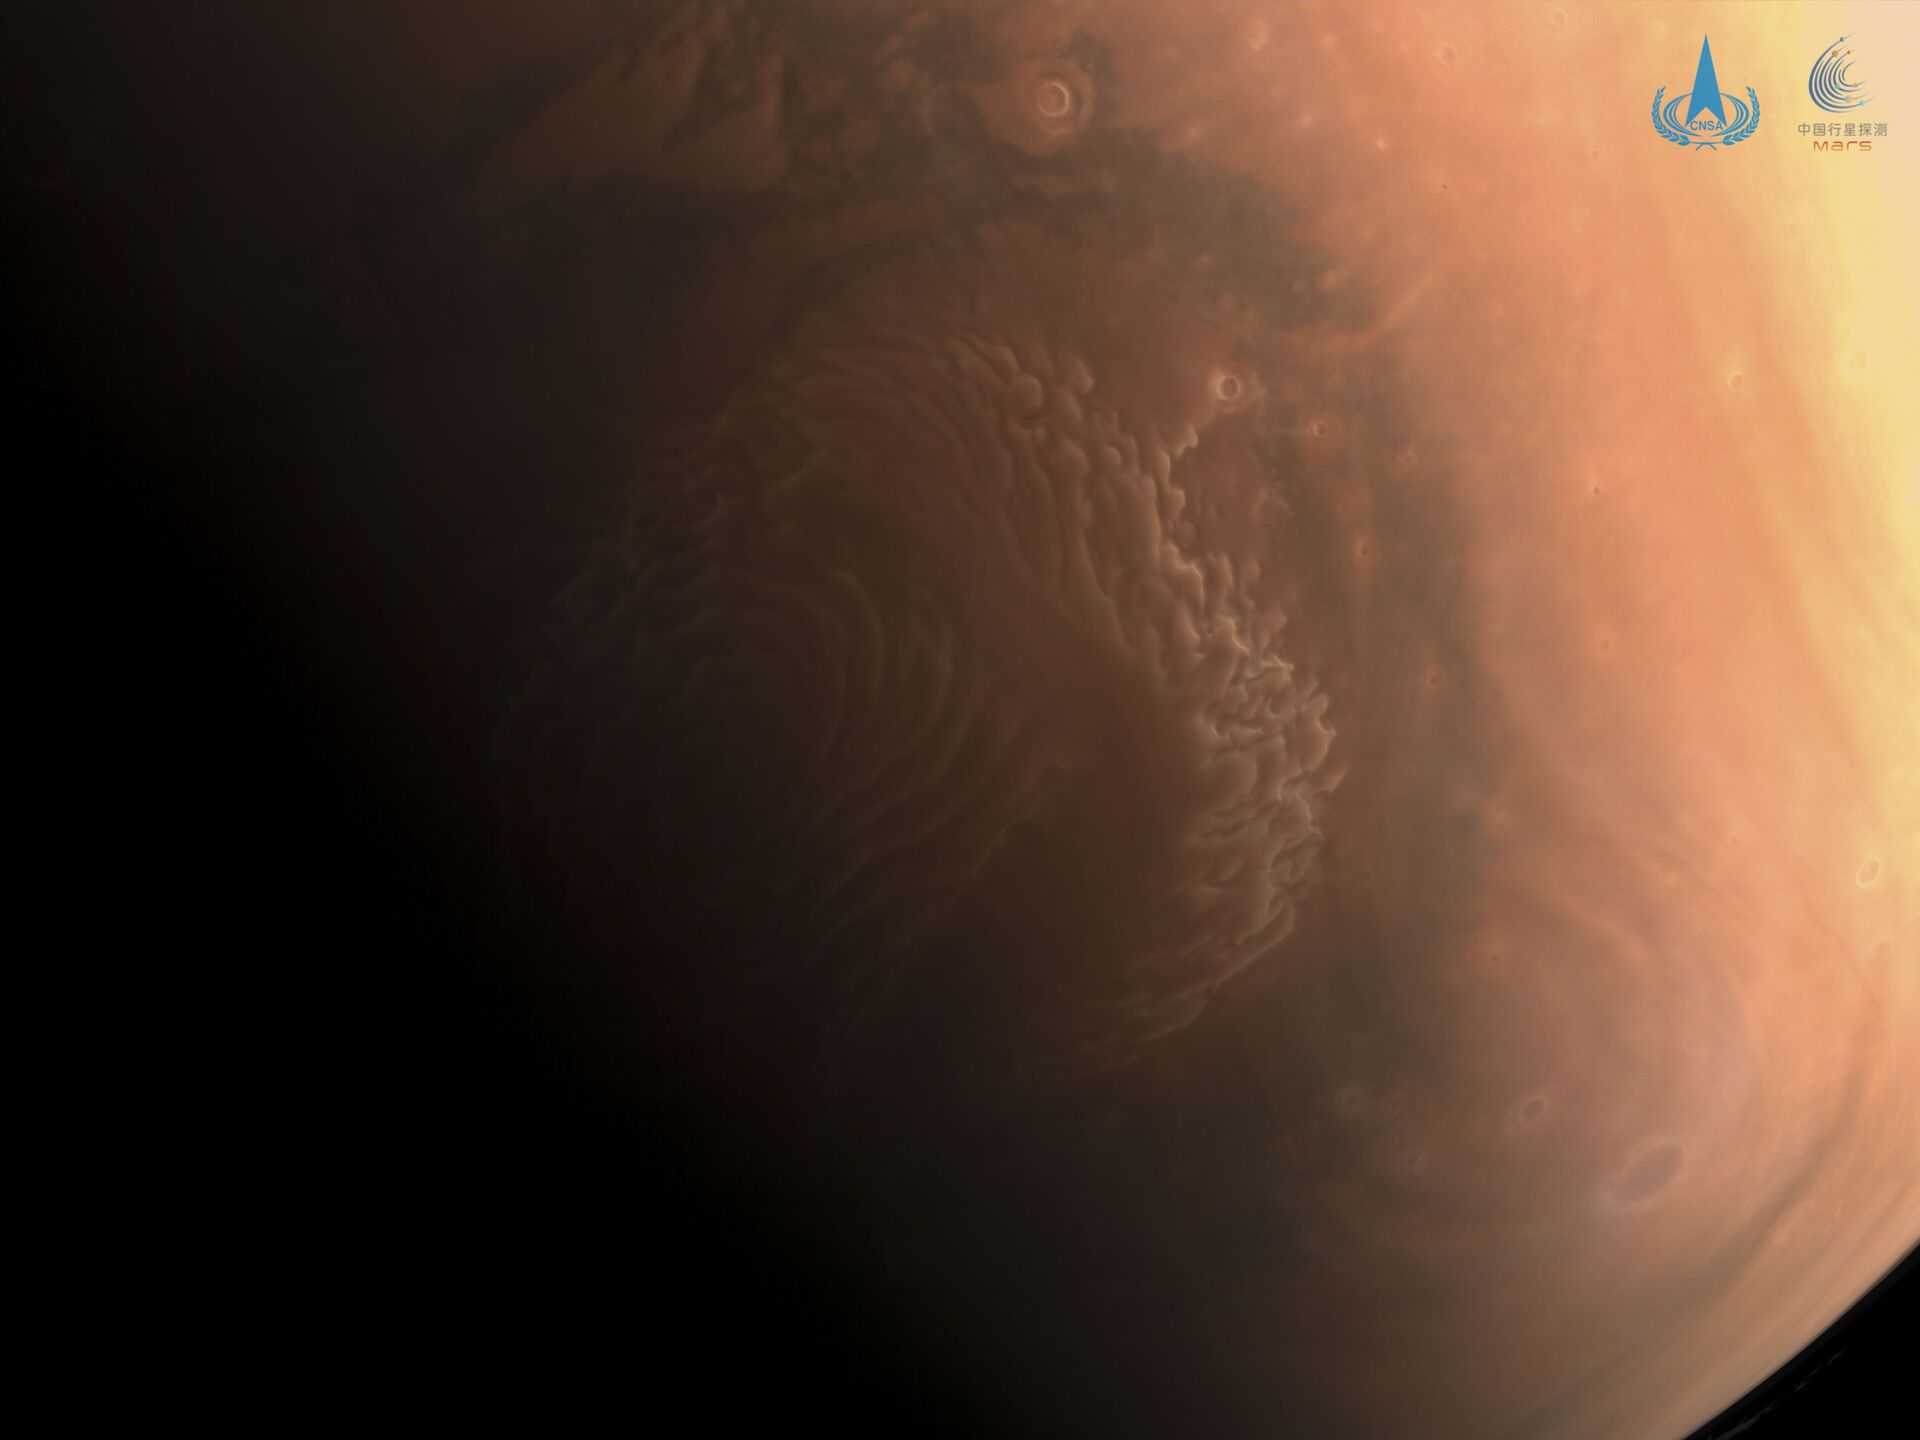 Снимок Марса, сделанный зондом китайской станции Tianwen-1 - Sputnik Узбекистан, 1920, 09.03.2021